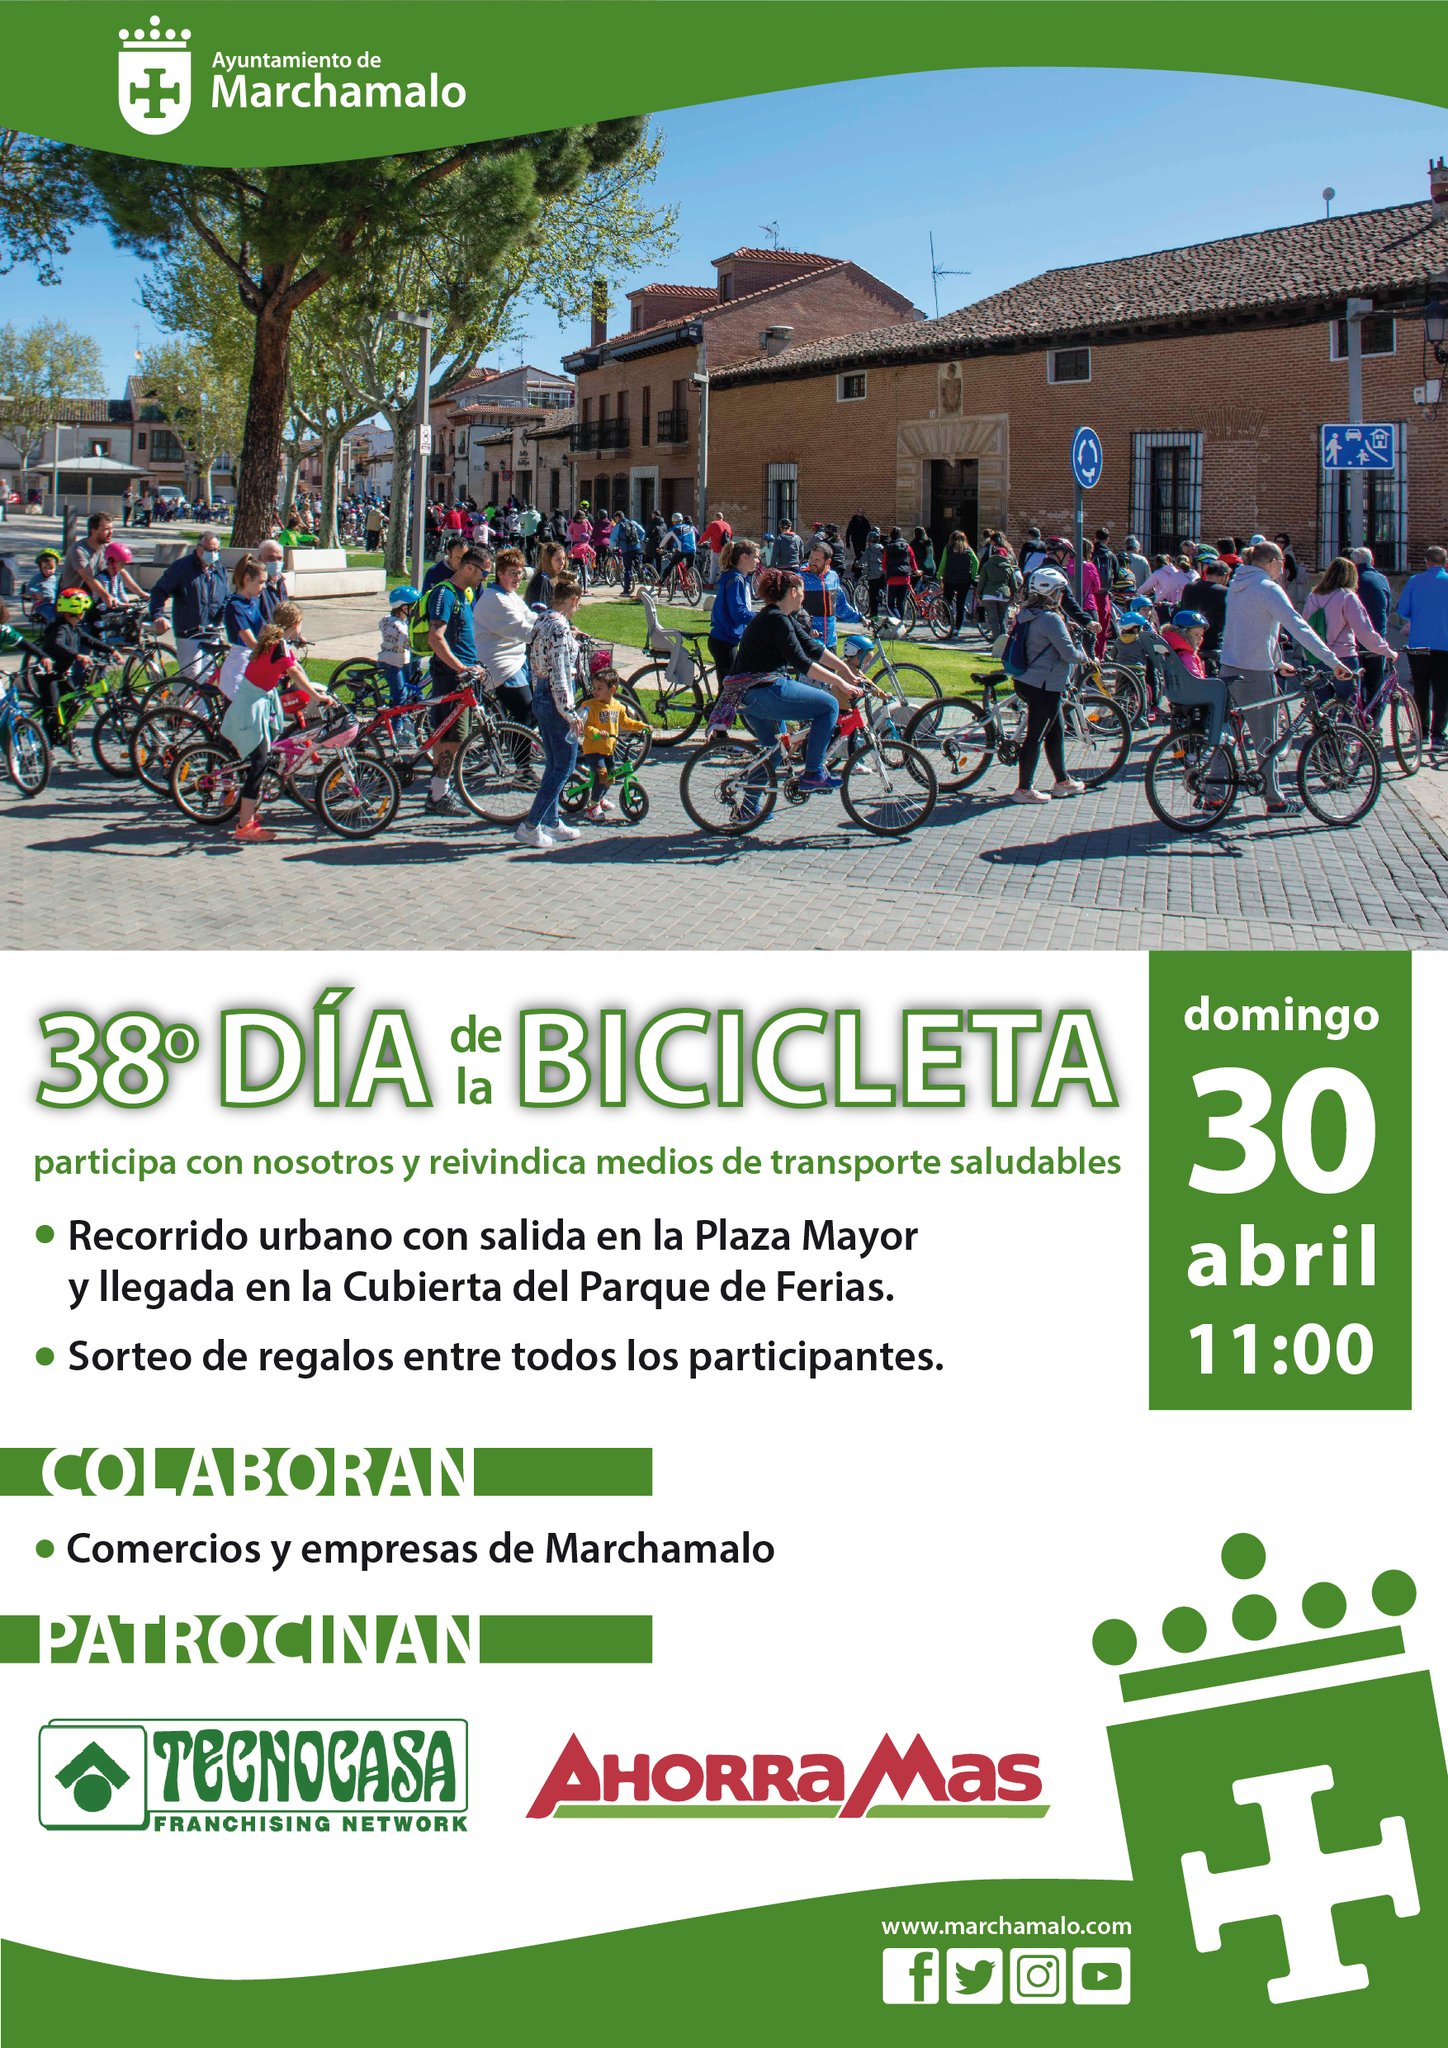 Celebra el Día de la Bicicleta y el Alzado del Mayo en Marchamalo